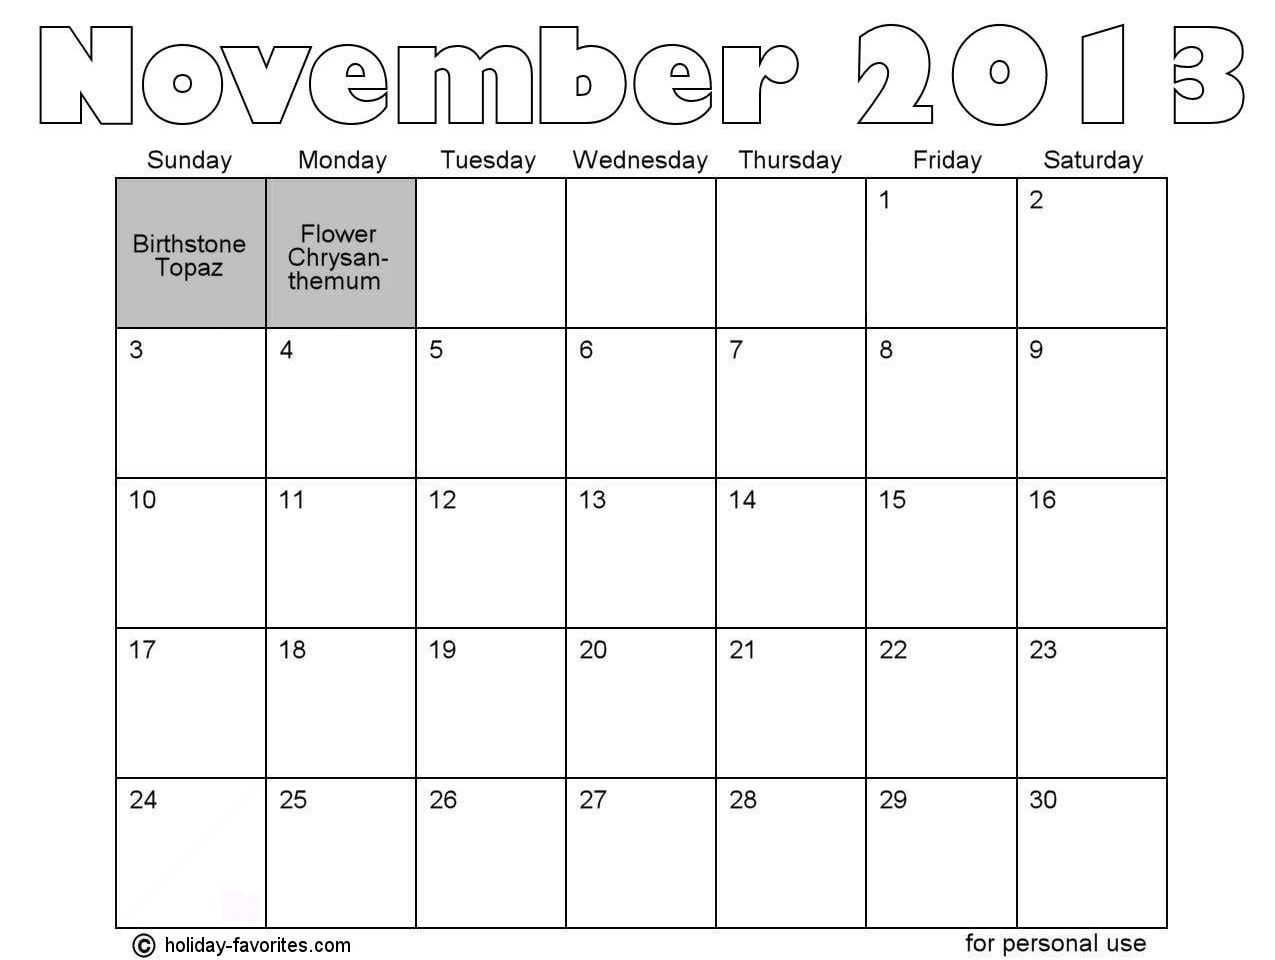 november-holidays-holiday-favorites